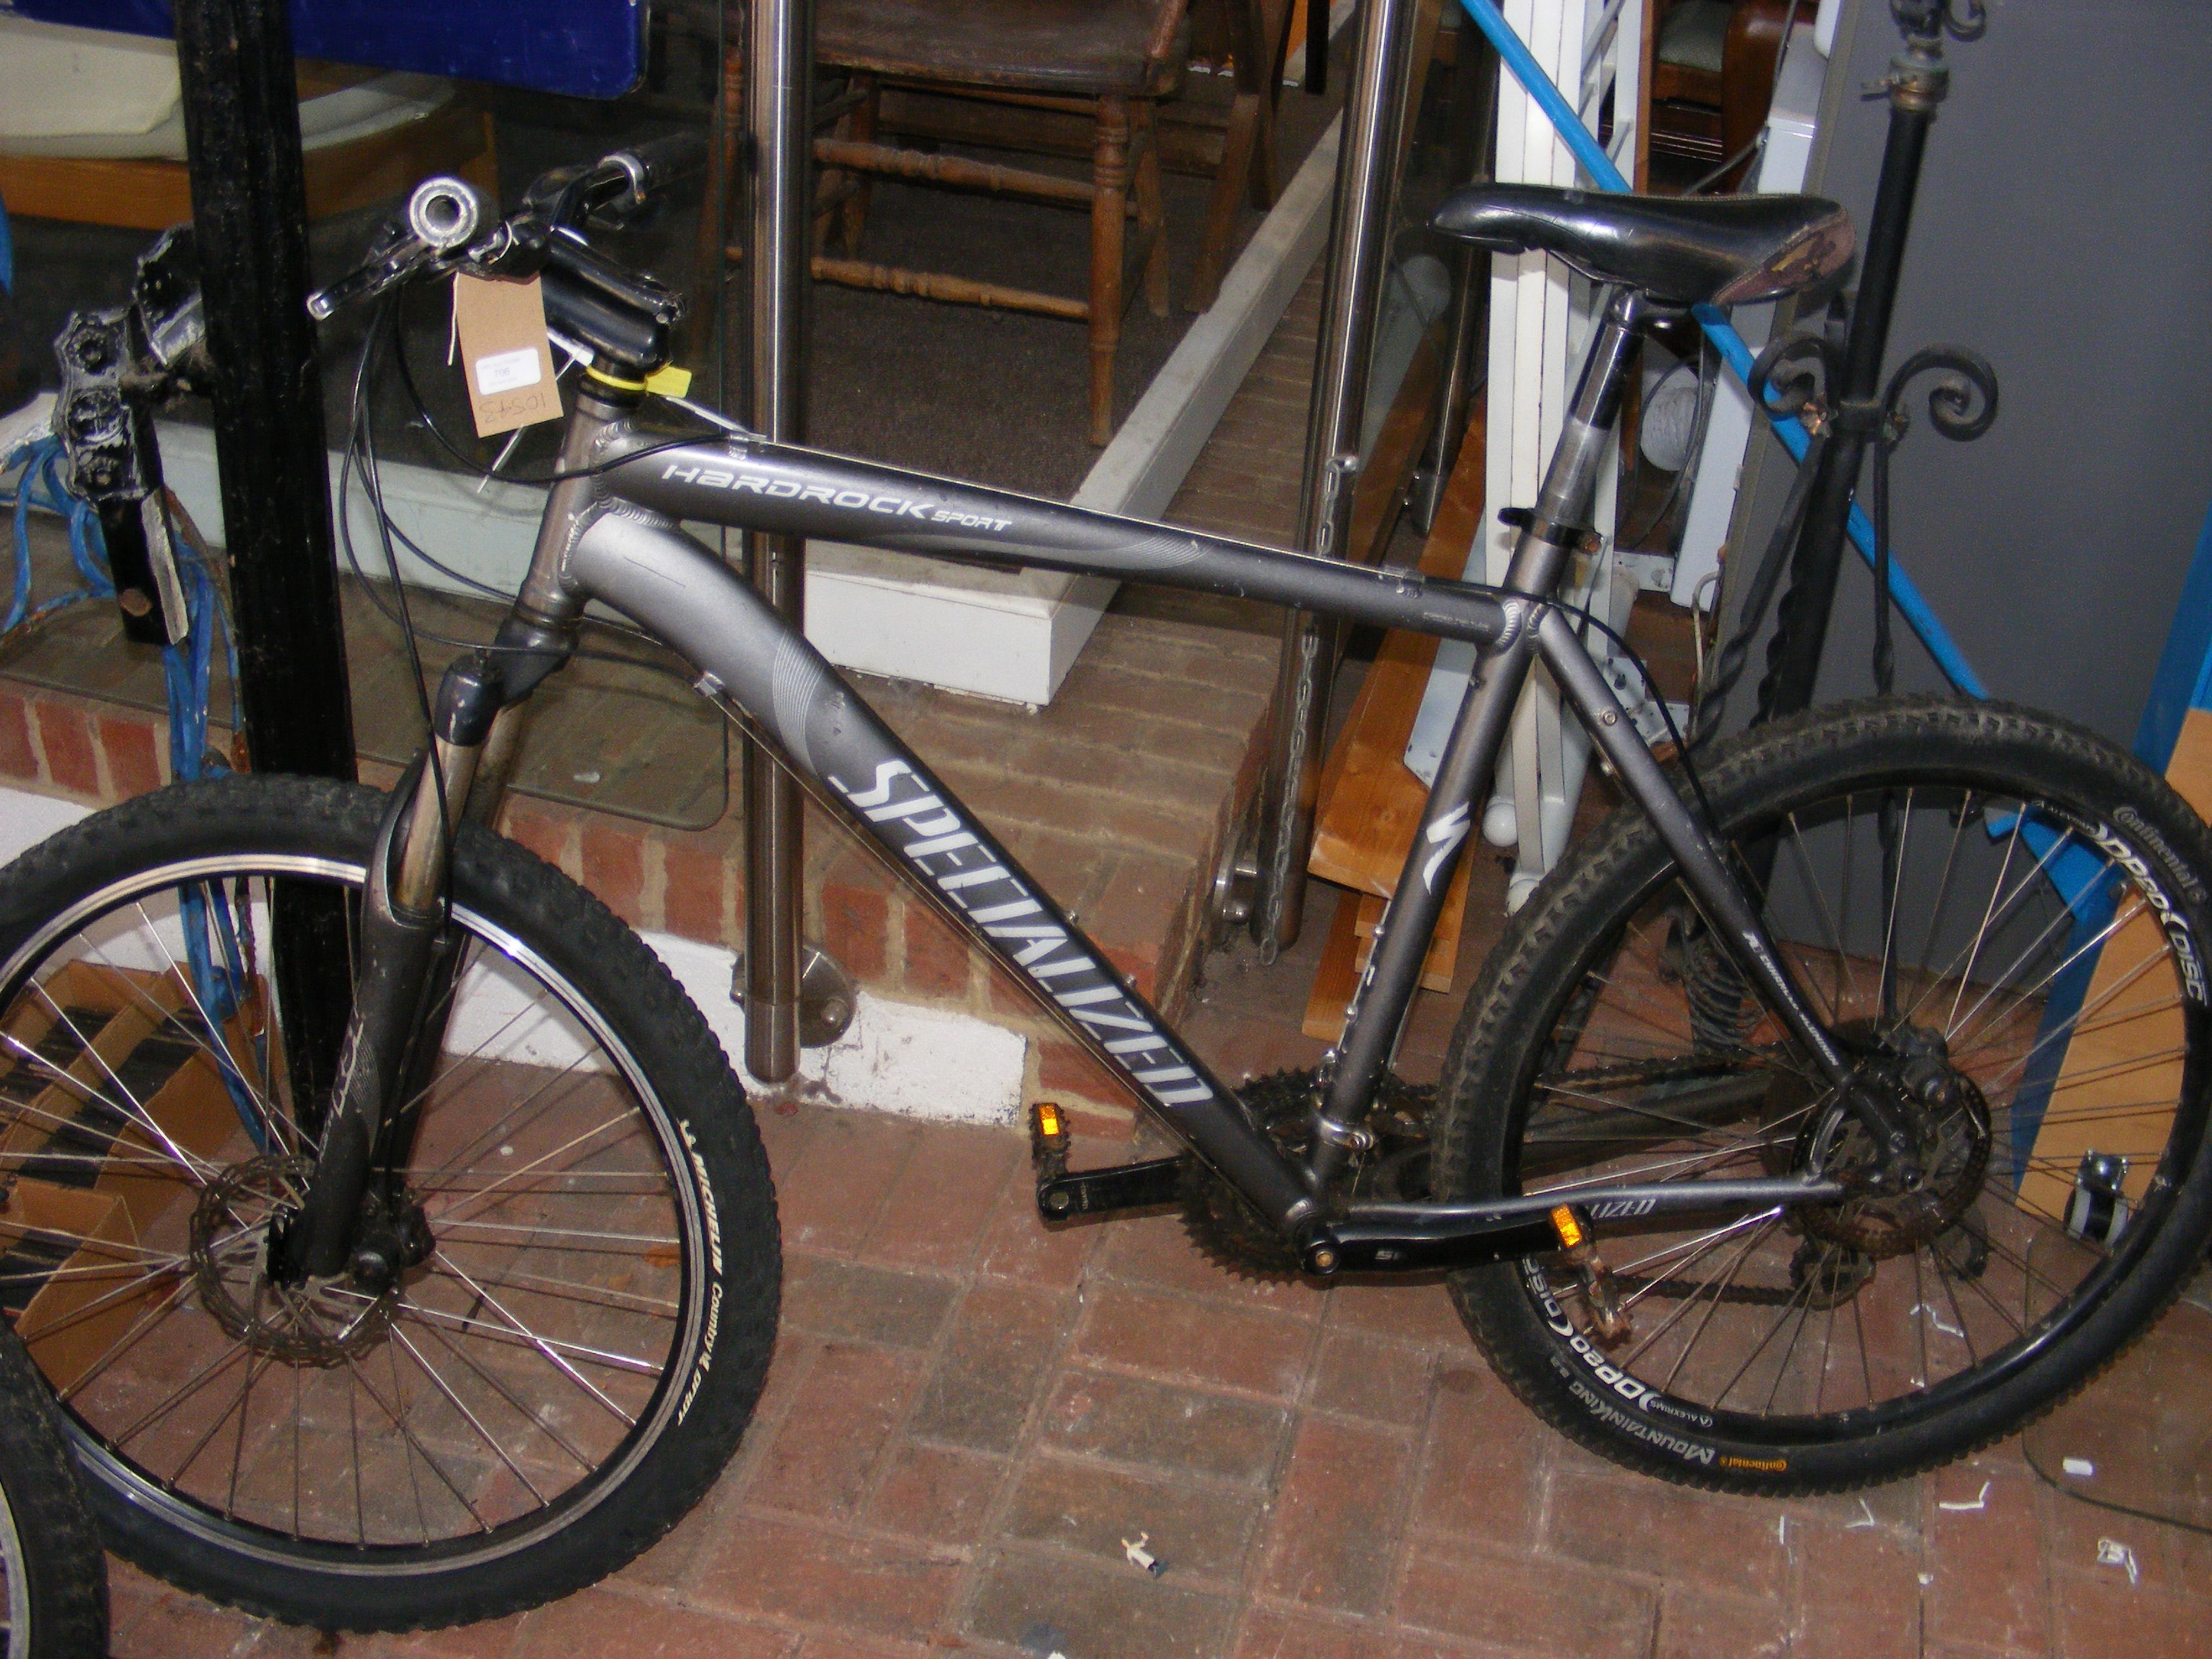 A Specialized Hardrock Sport Mountain Bike